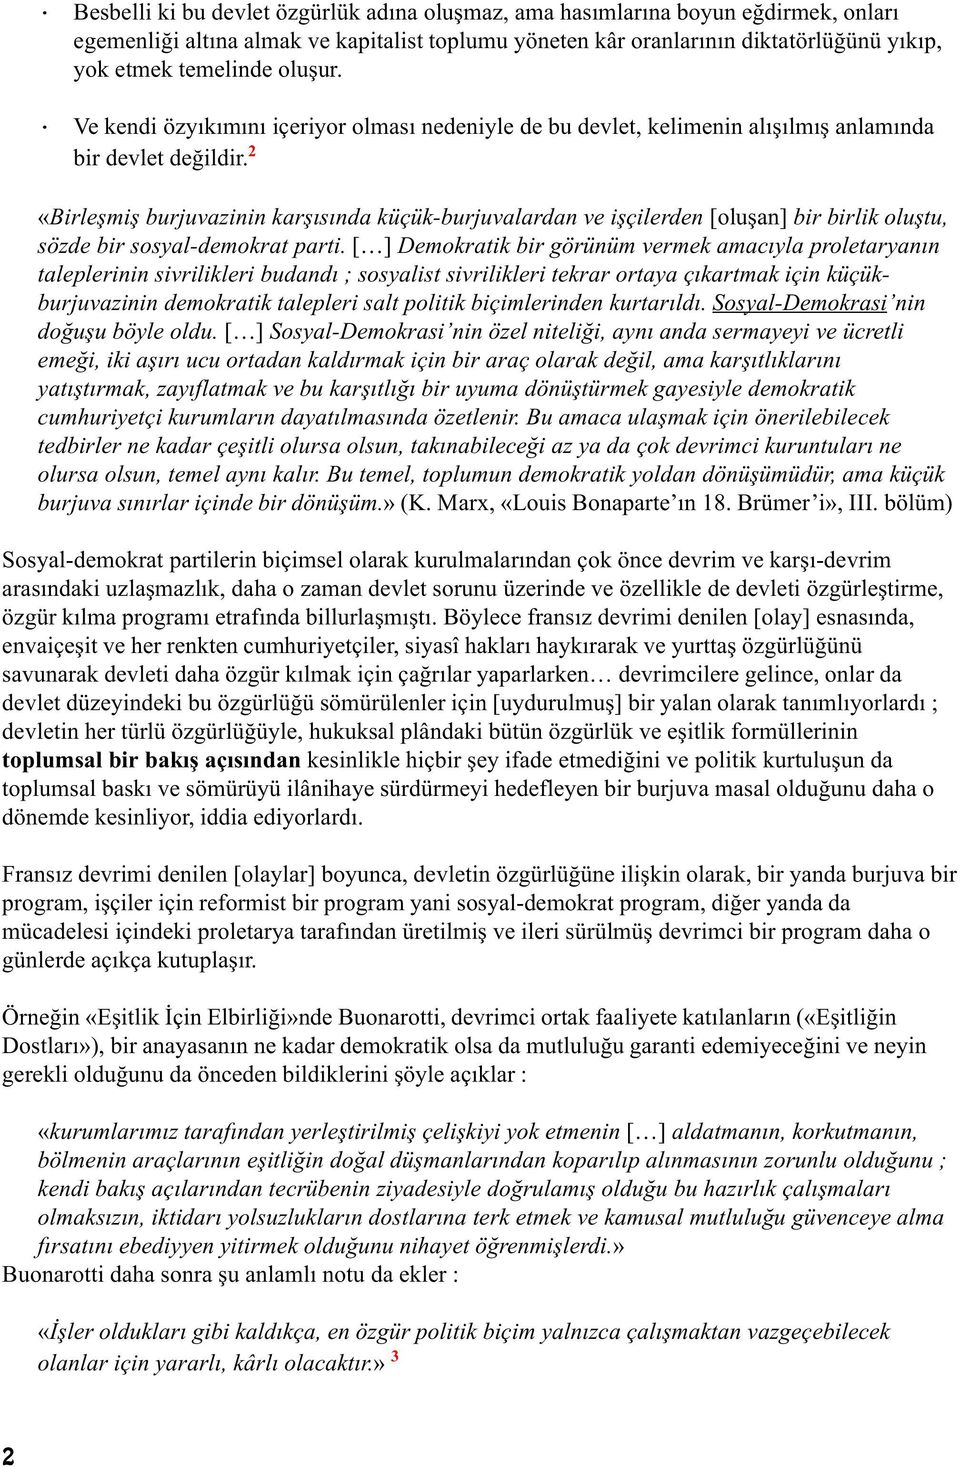 2 «Birleºmiº burjuvazinin karþýsýnda küçük-burjuvalardan ve iþçilerden [oluºan] bir birlik oluºtu, sözde bir sosyal-demokrat parti.